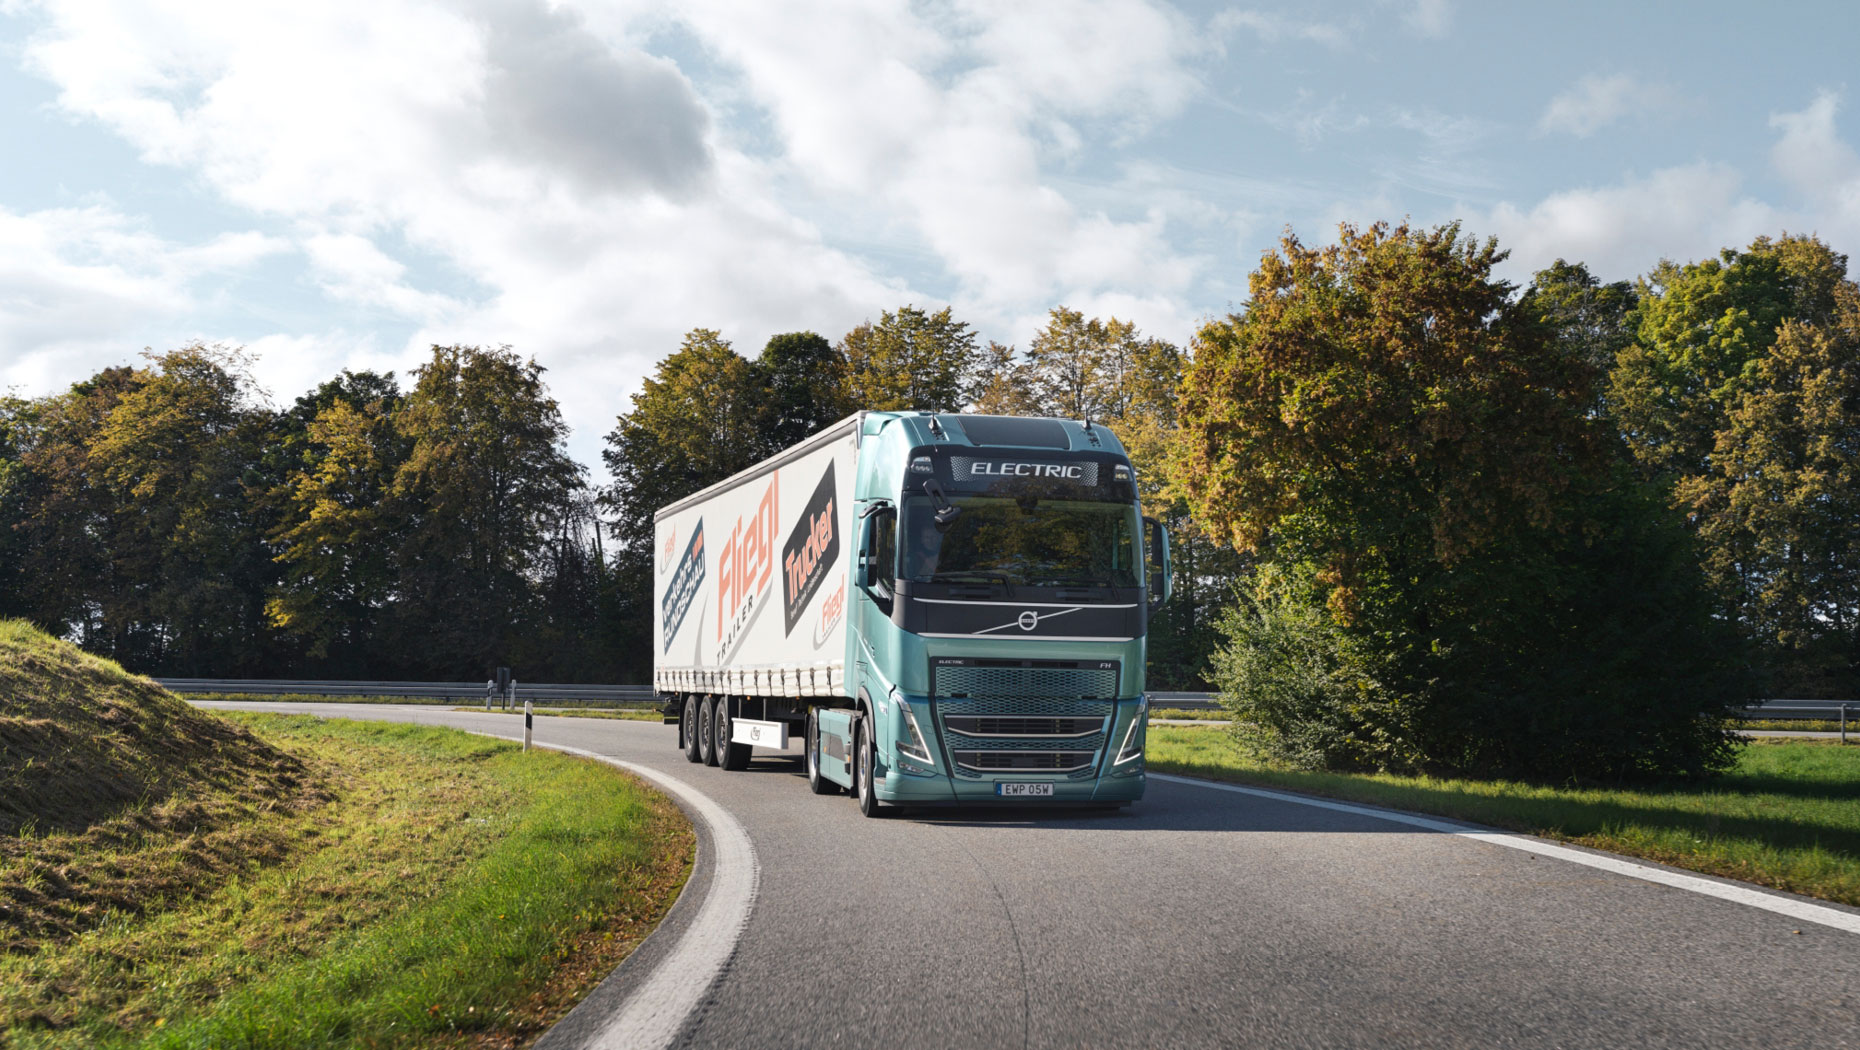 Volvos tunga elektriska lastbil satt på prov: utmärker sig både i